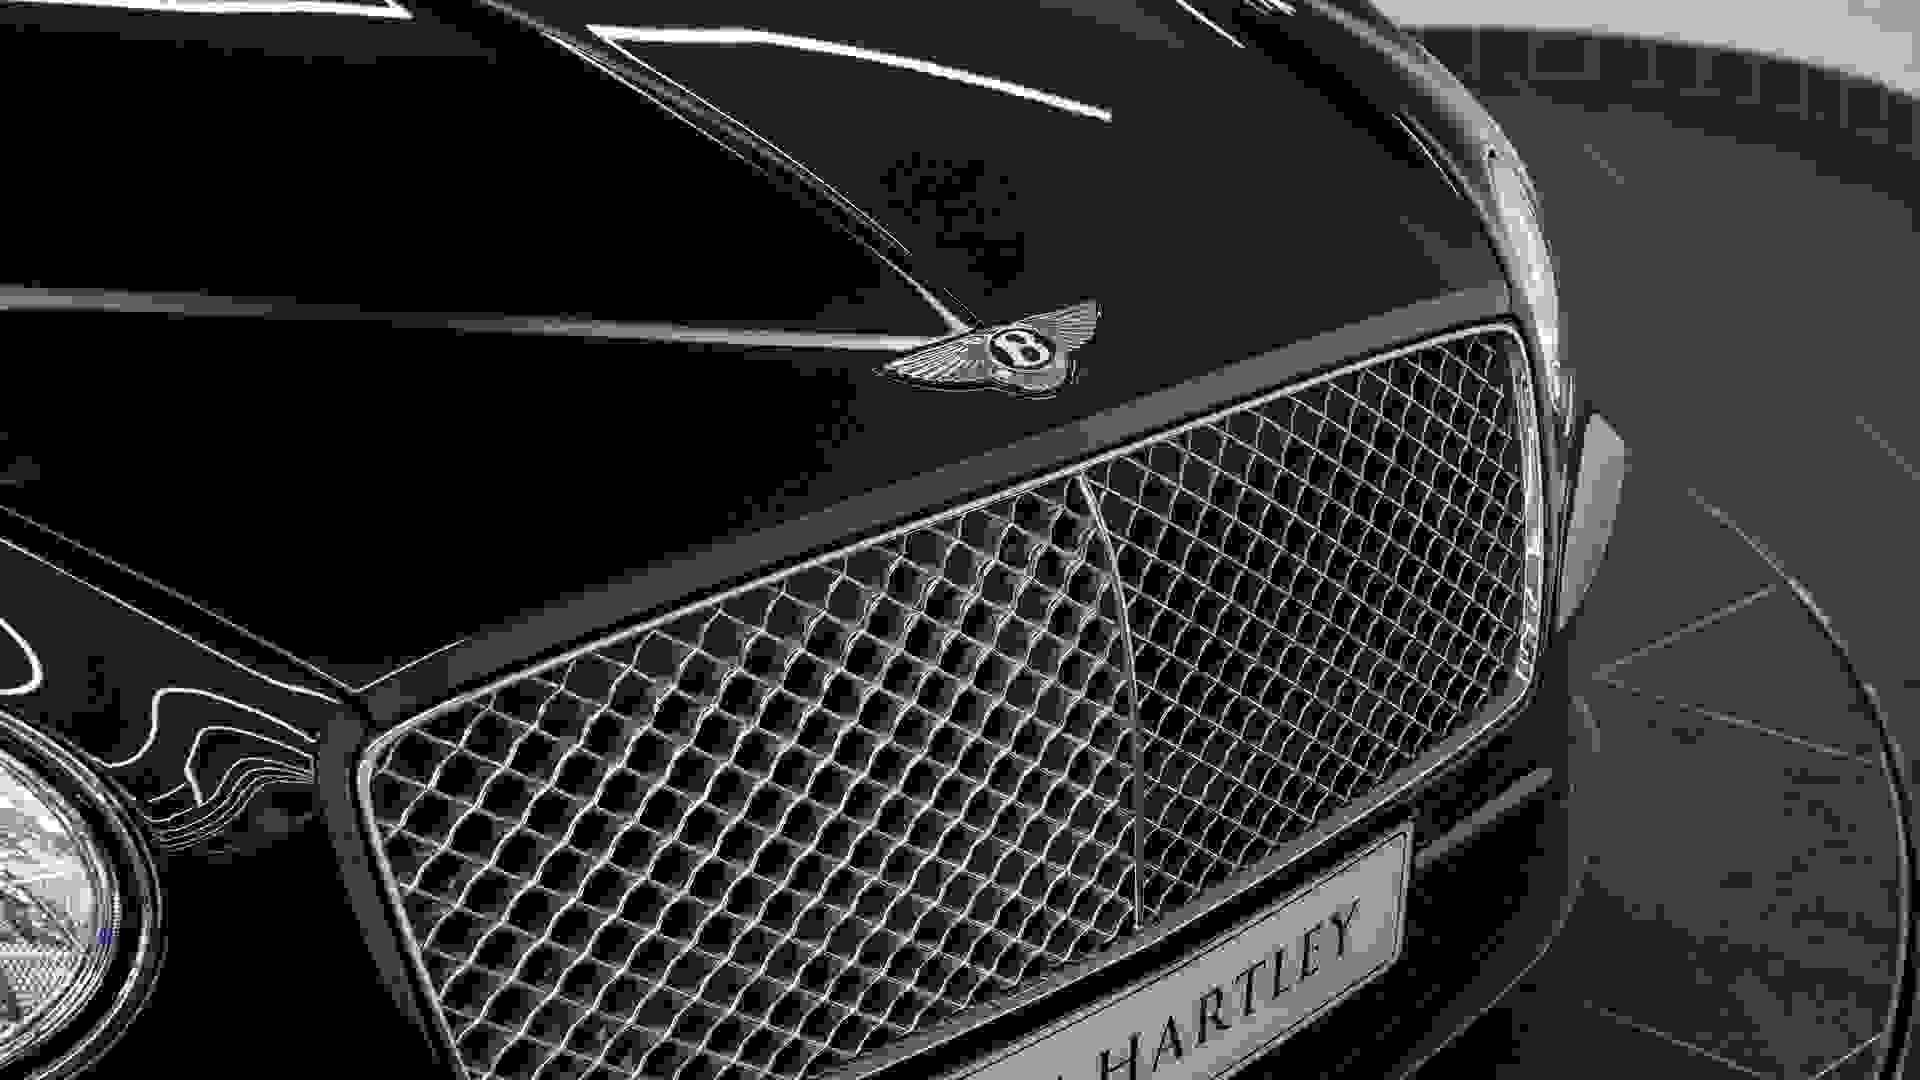 Bentley Continental GT Photo 74acf132-231b-4f36-a72d-d421053c8c44.jpg